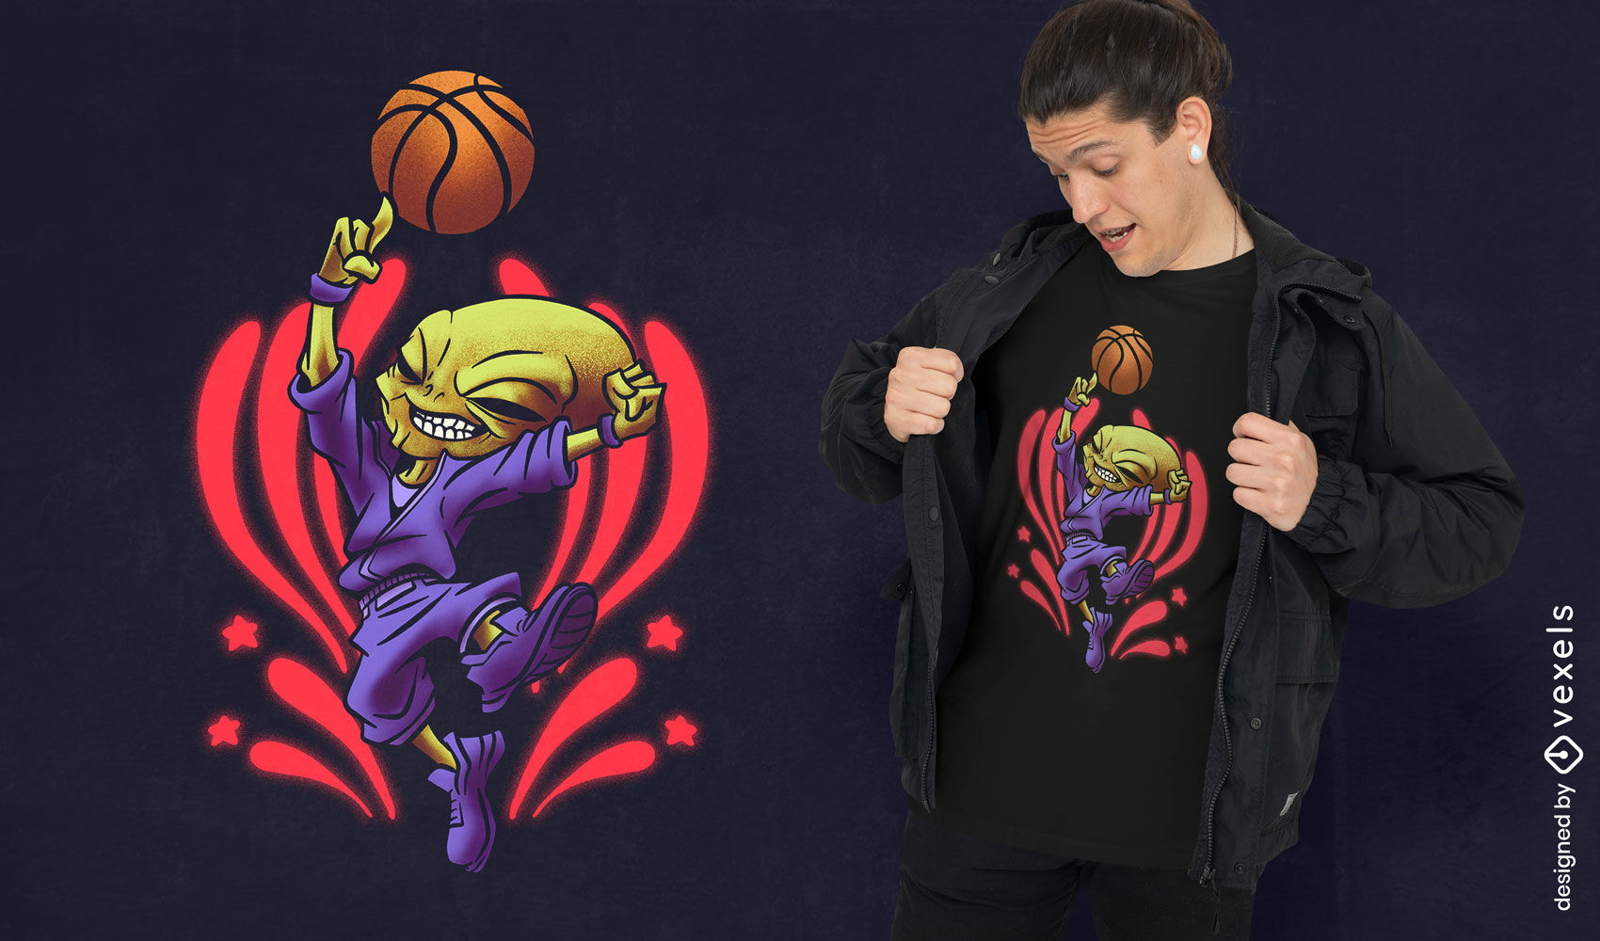 Diseño de camiseta alienígena de jugador de baloncesto.